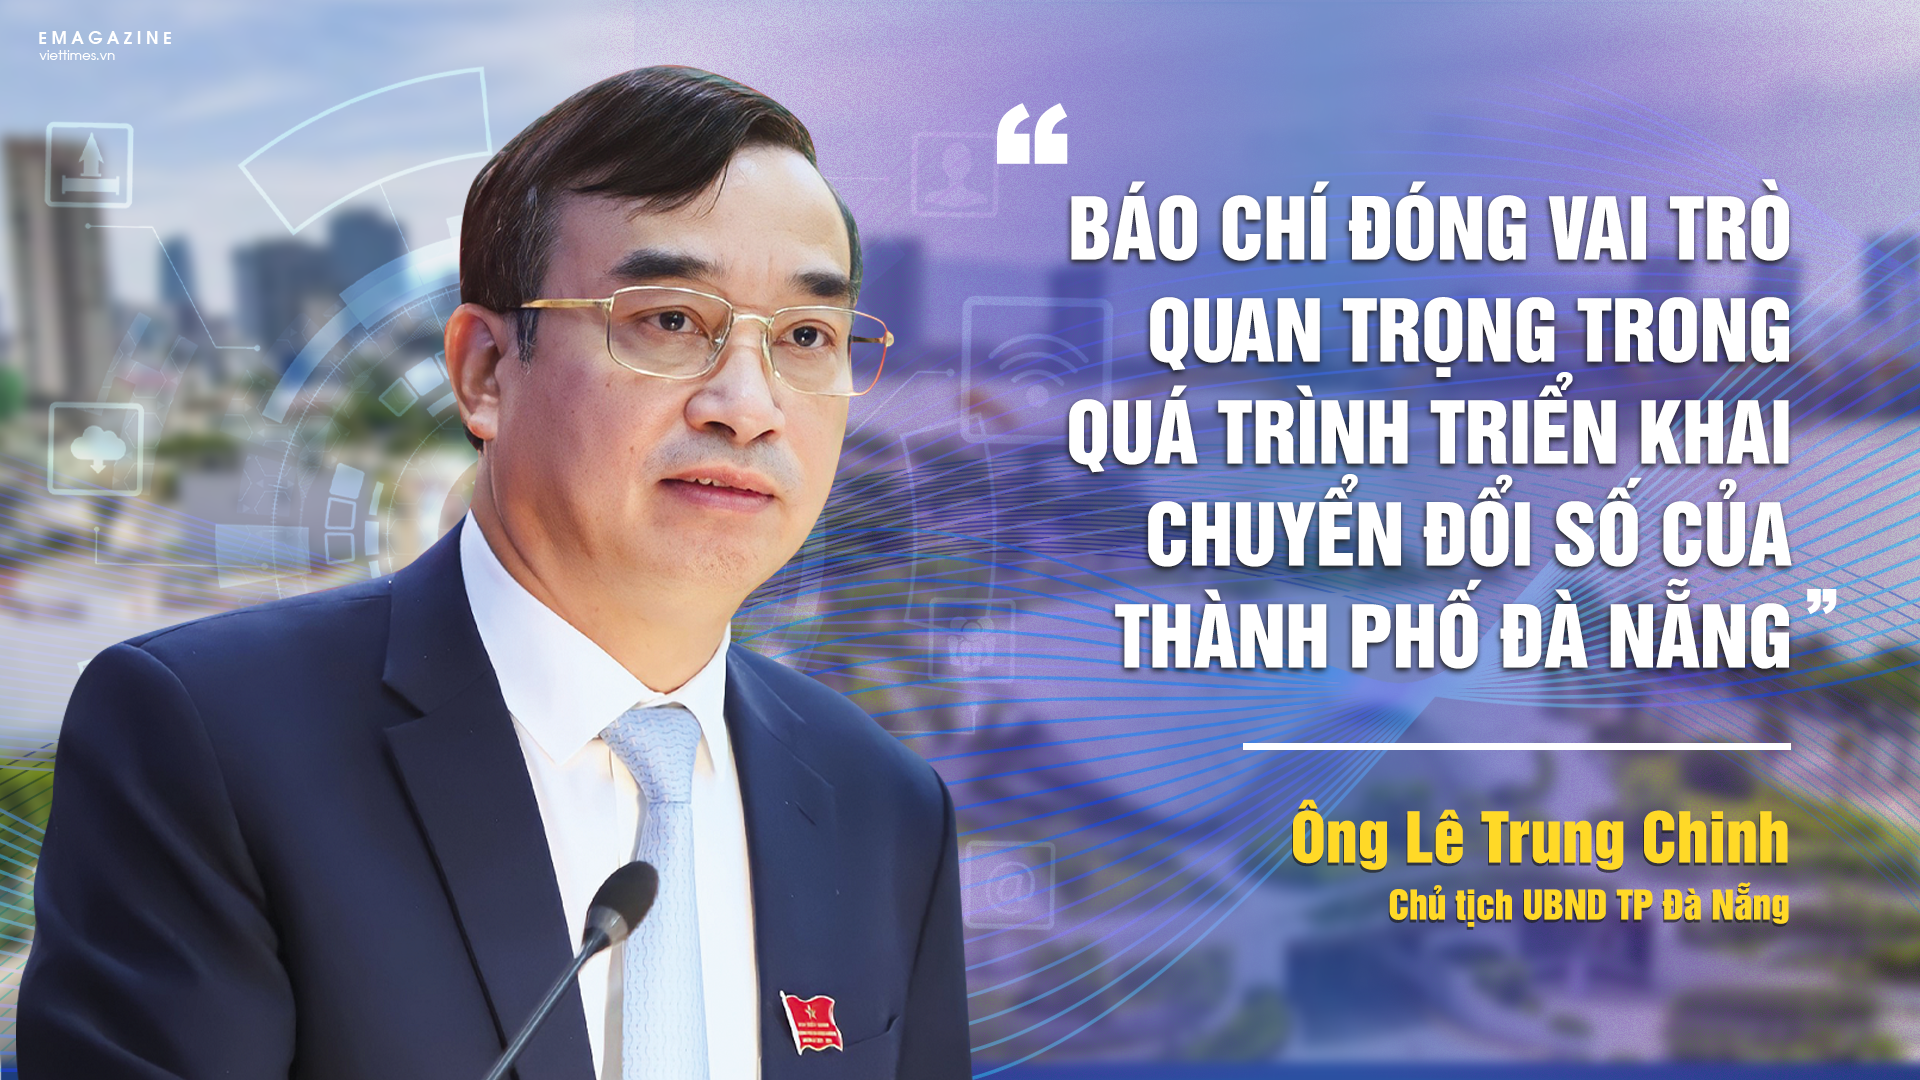 Ông Lê Trung Chinh – Chủ tịch UBND TP Đà Nẵng - trả lời phỏng vấn của VietTimes về vấn đề chuyển đổi số của TP Đà Nẵng và vai trò của báo chí trong tiến trình chuyển đổi số tại địa phương.